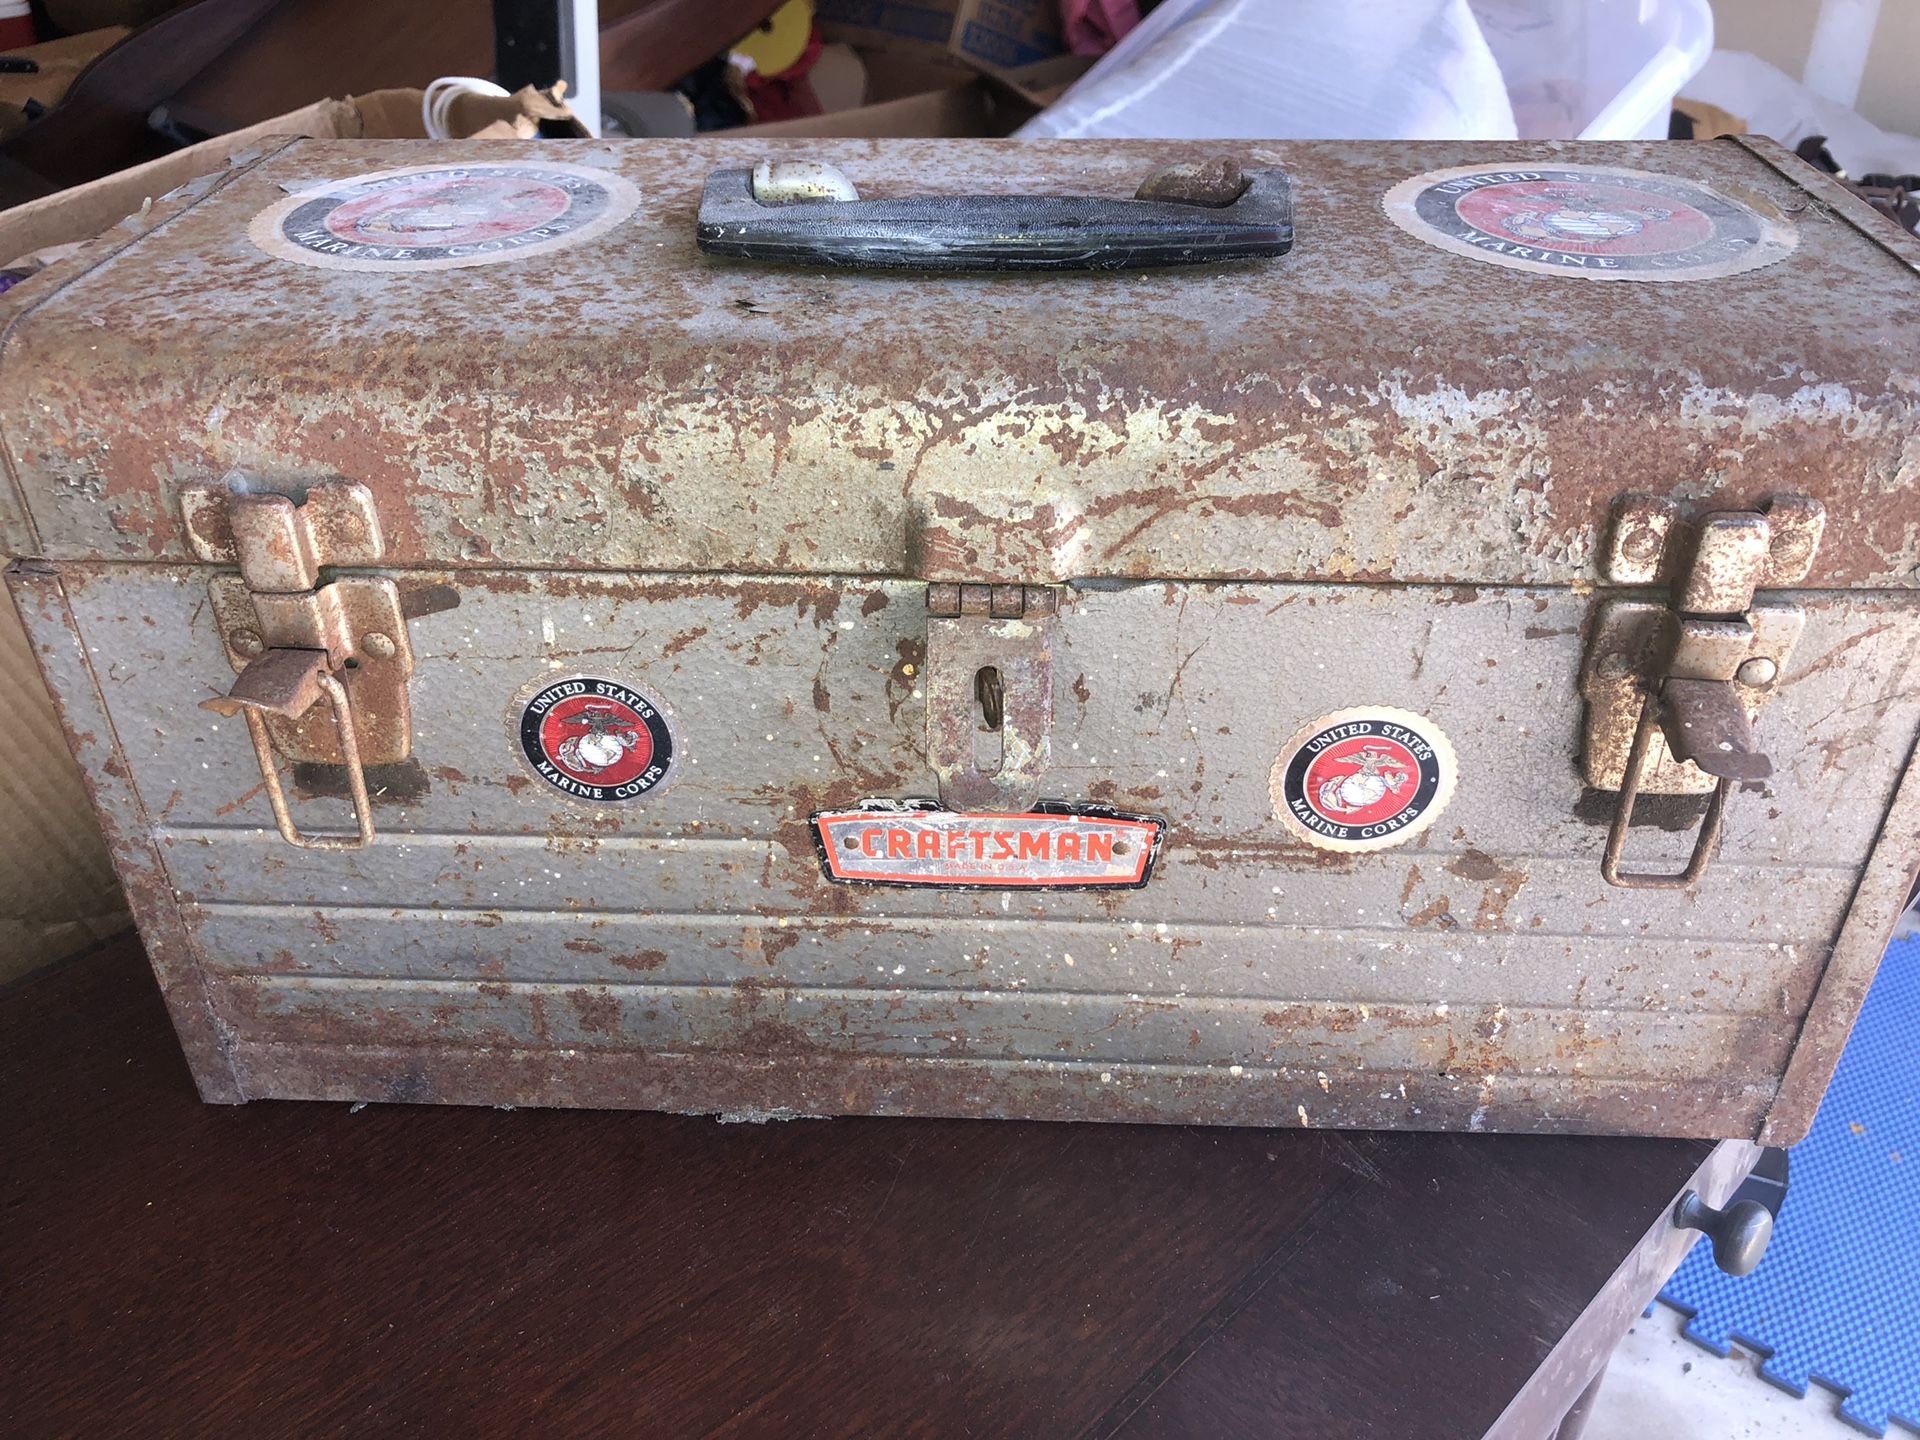 Antique tool box